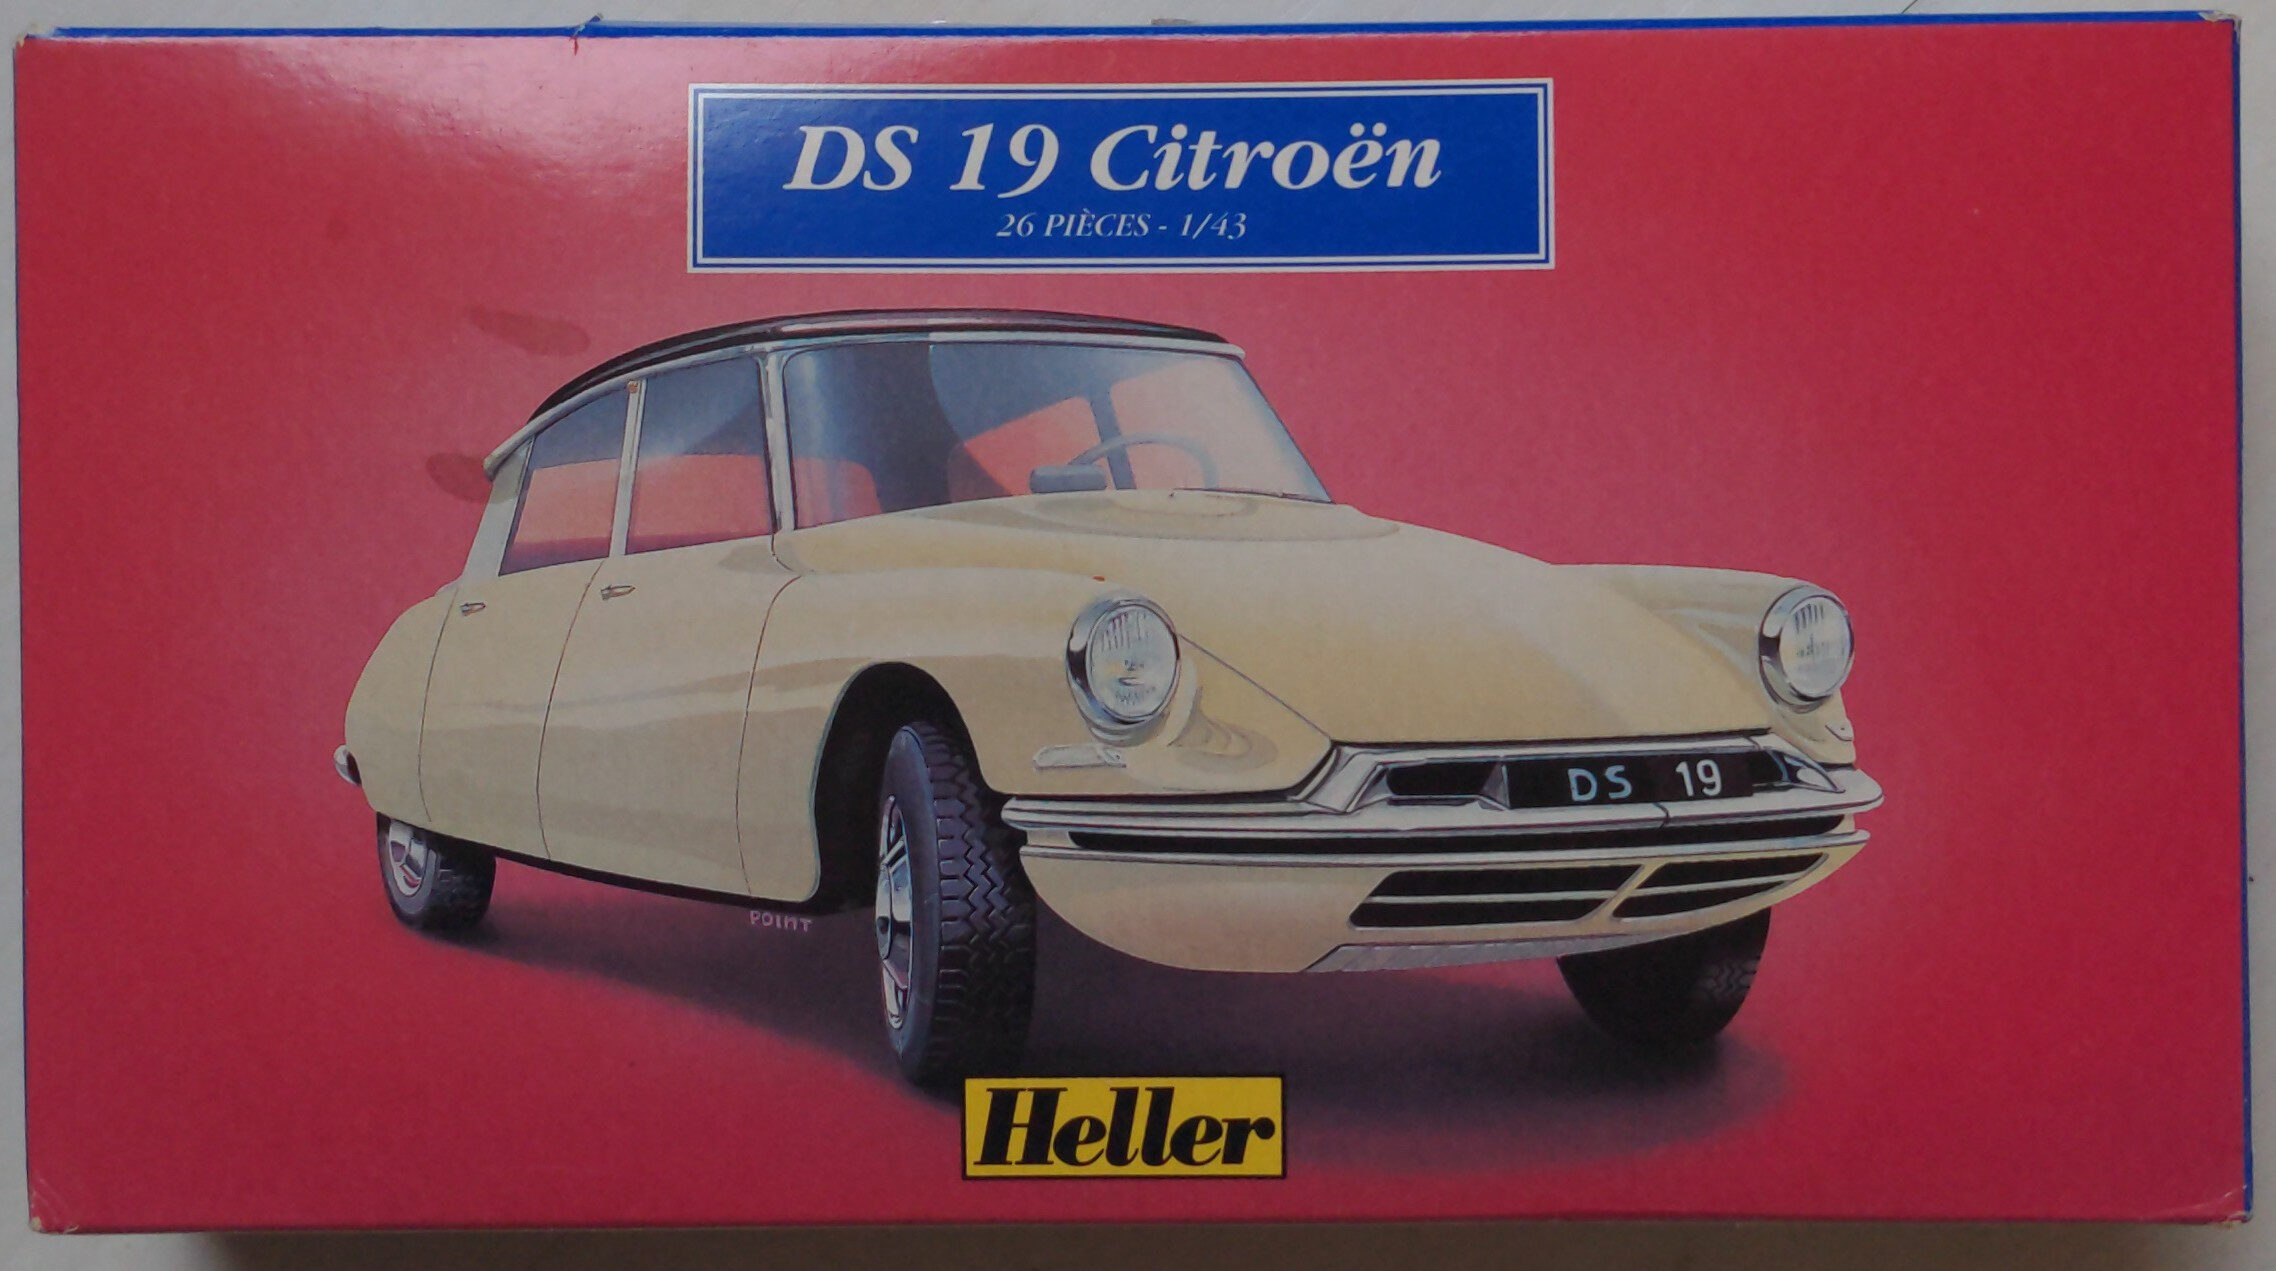 DS 19 Citroën - Produit - fr